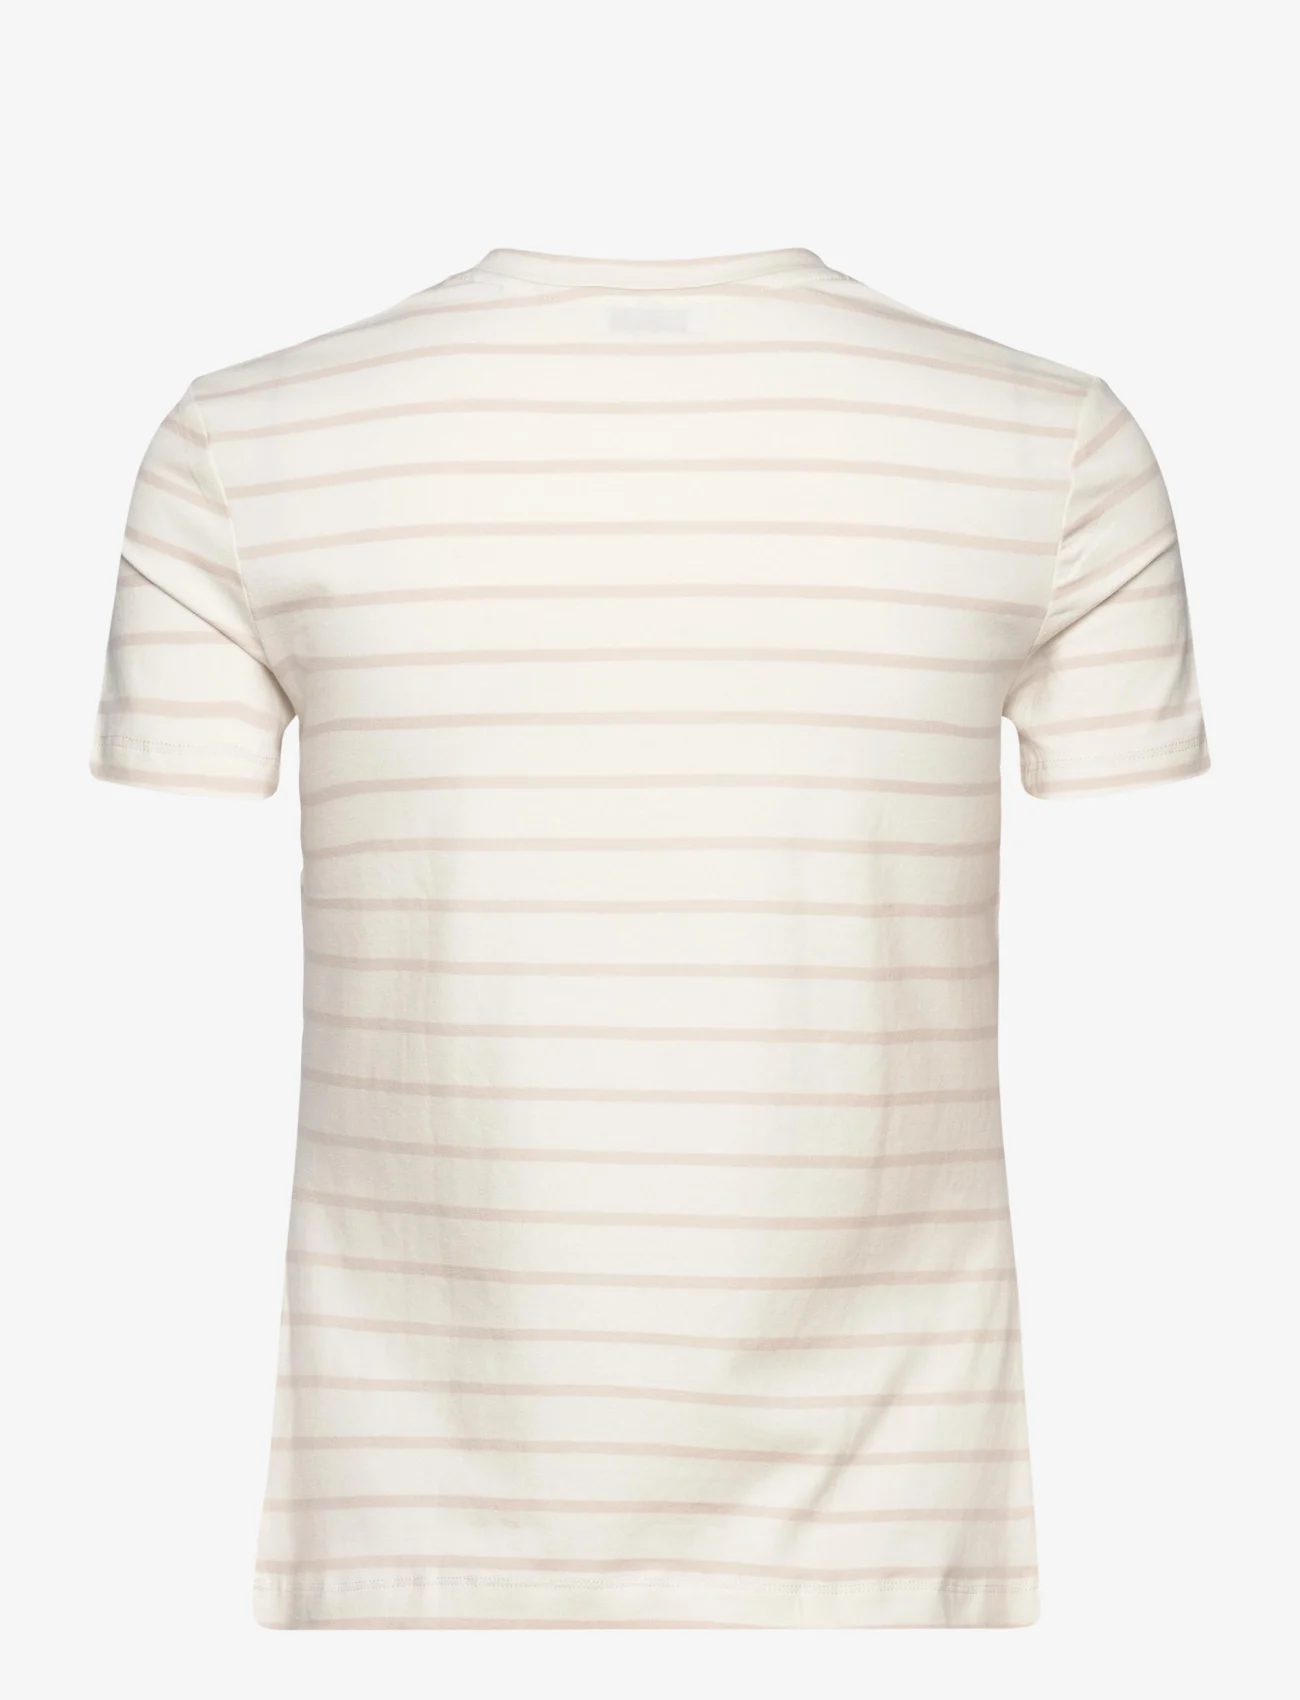 Esprit Casual - T-Shirts - die niedrigsten preise - off white 3 - 1